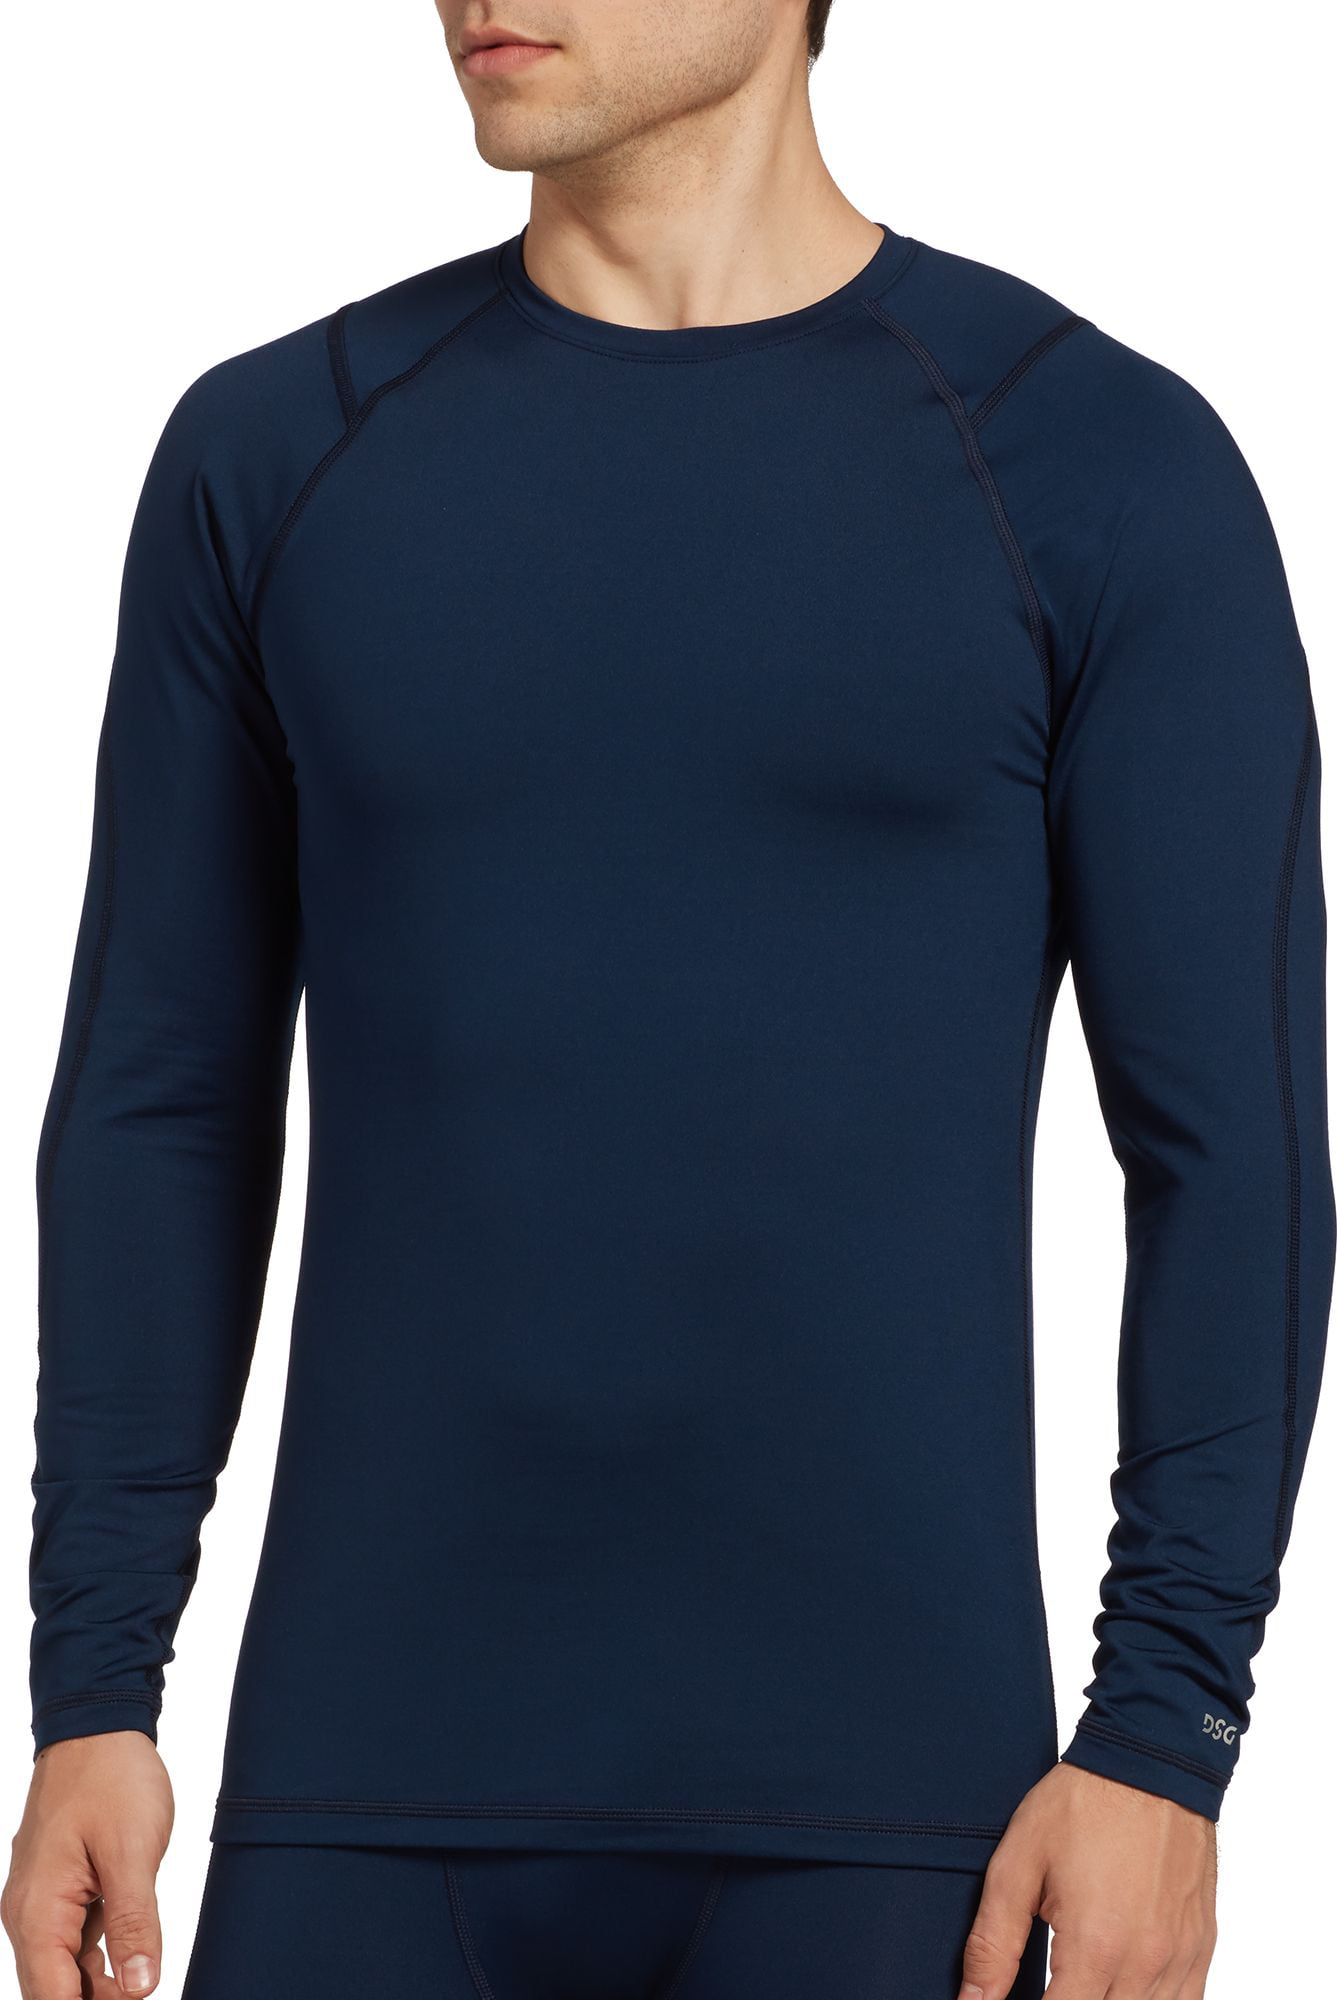 DSG Outerwear - DSG Men's Cold Weather Crewneck Long Sleeve Shirt ...